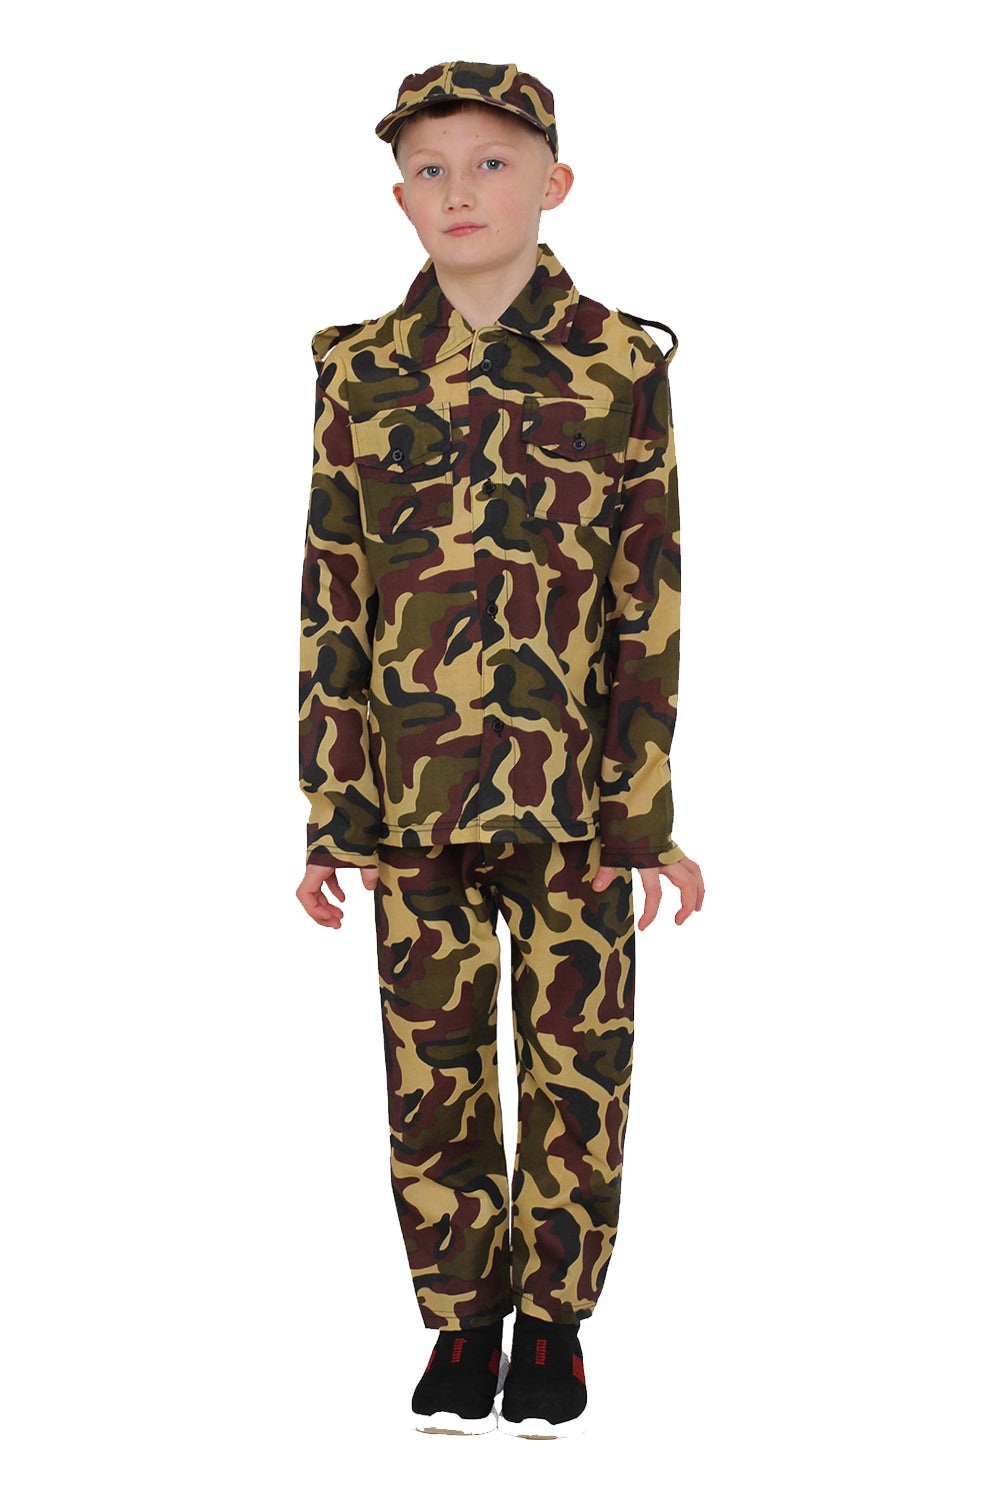 Wickedfun Camouflage Army Children's Costume